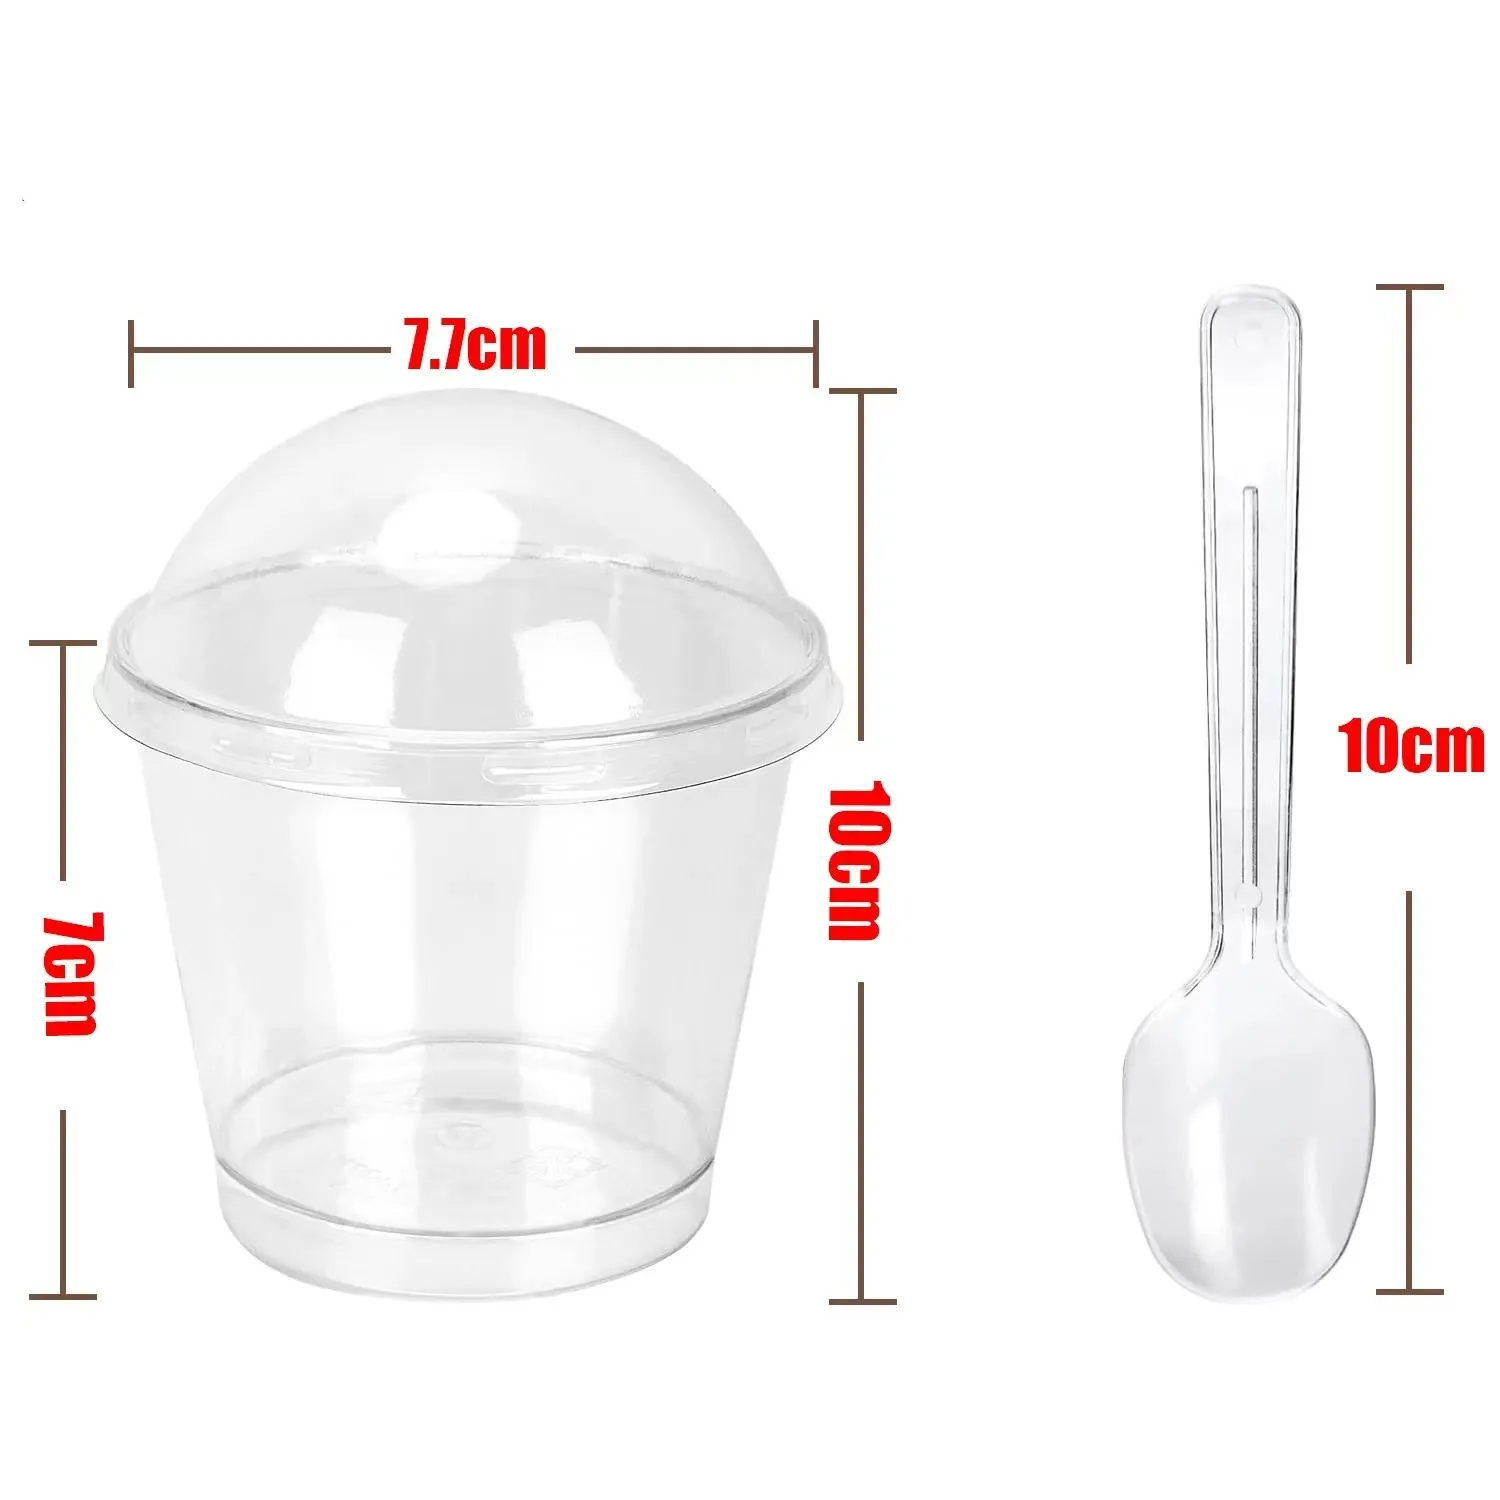 プラスチック製の蓋とスプーンが付いた透明なプラスチック製のデザートカップ、小さな透明なプラスチック製のタンブラーカップセット、デザートに最適、